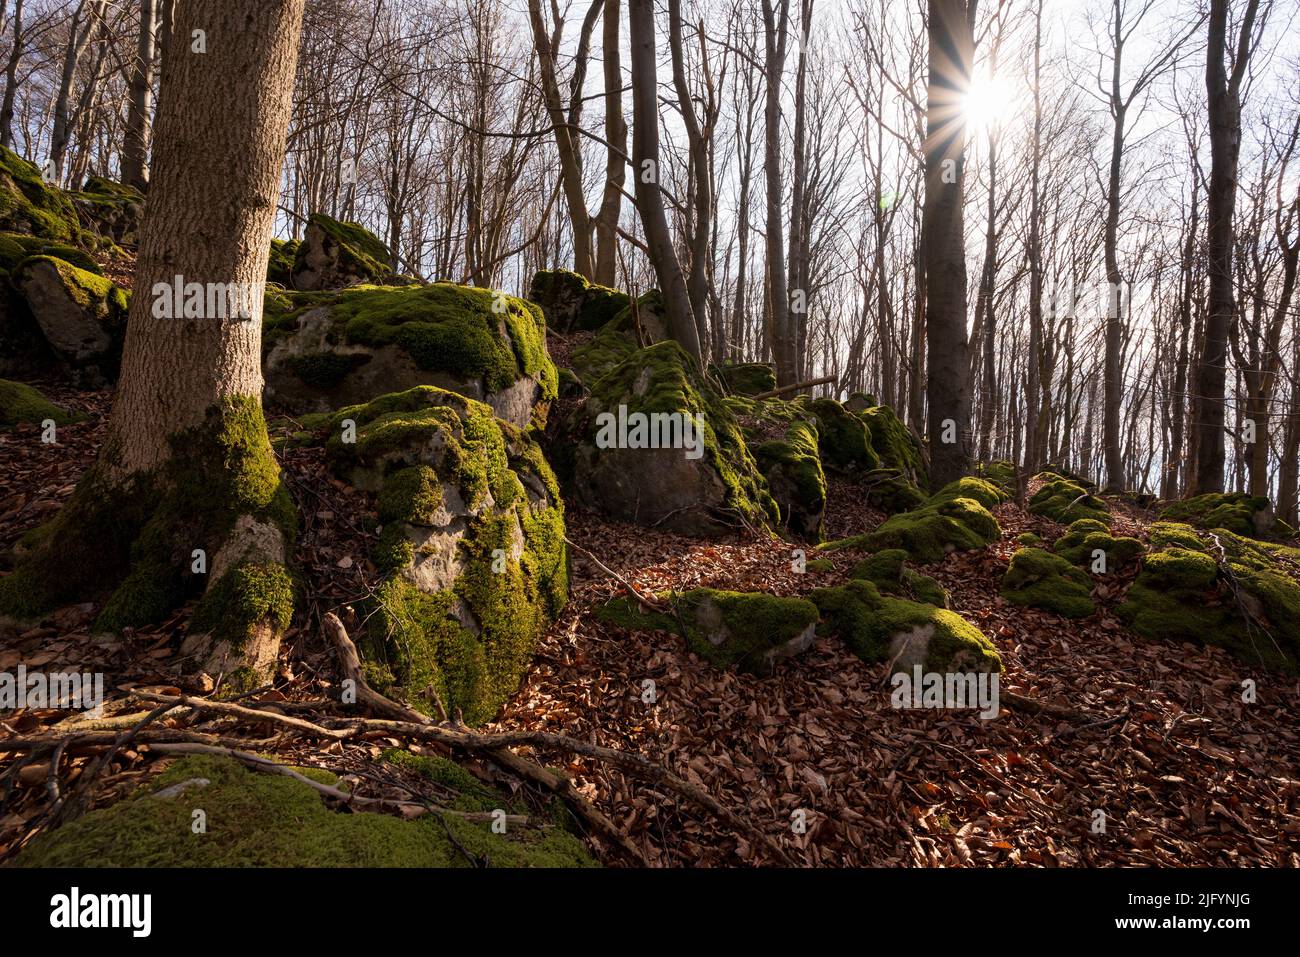 Paysage forestier idyllique sur la colline de Kanstein dans une belle lumière d'hiver, avec de vieux hêtres et des rochers recouverts de mousse, Weserbergland, Allemagne Banque D'Images